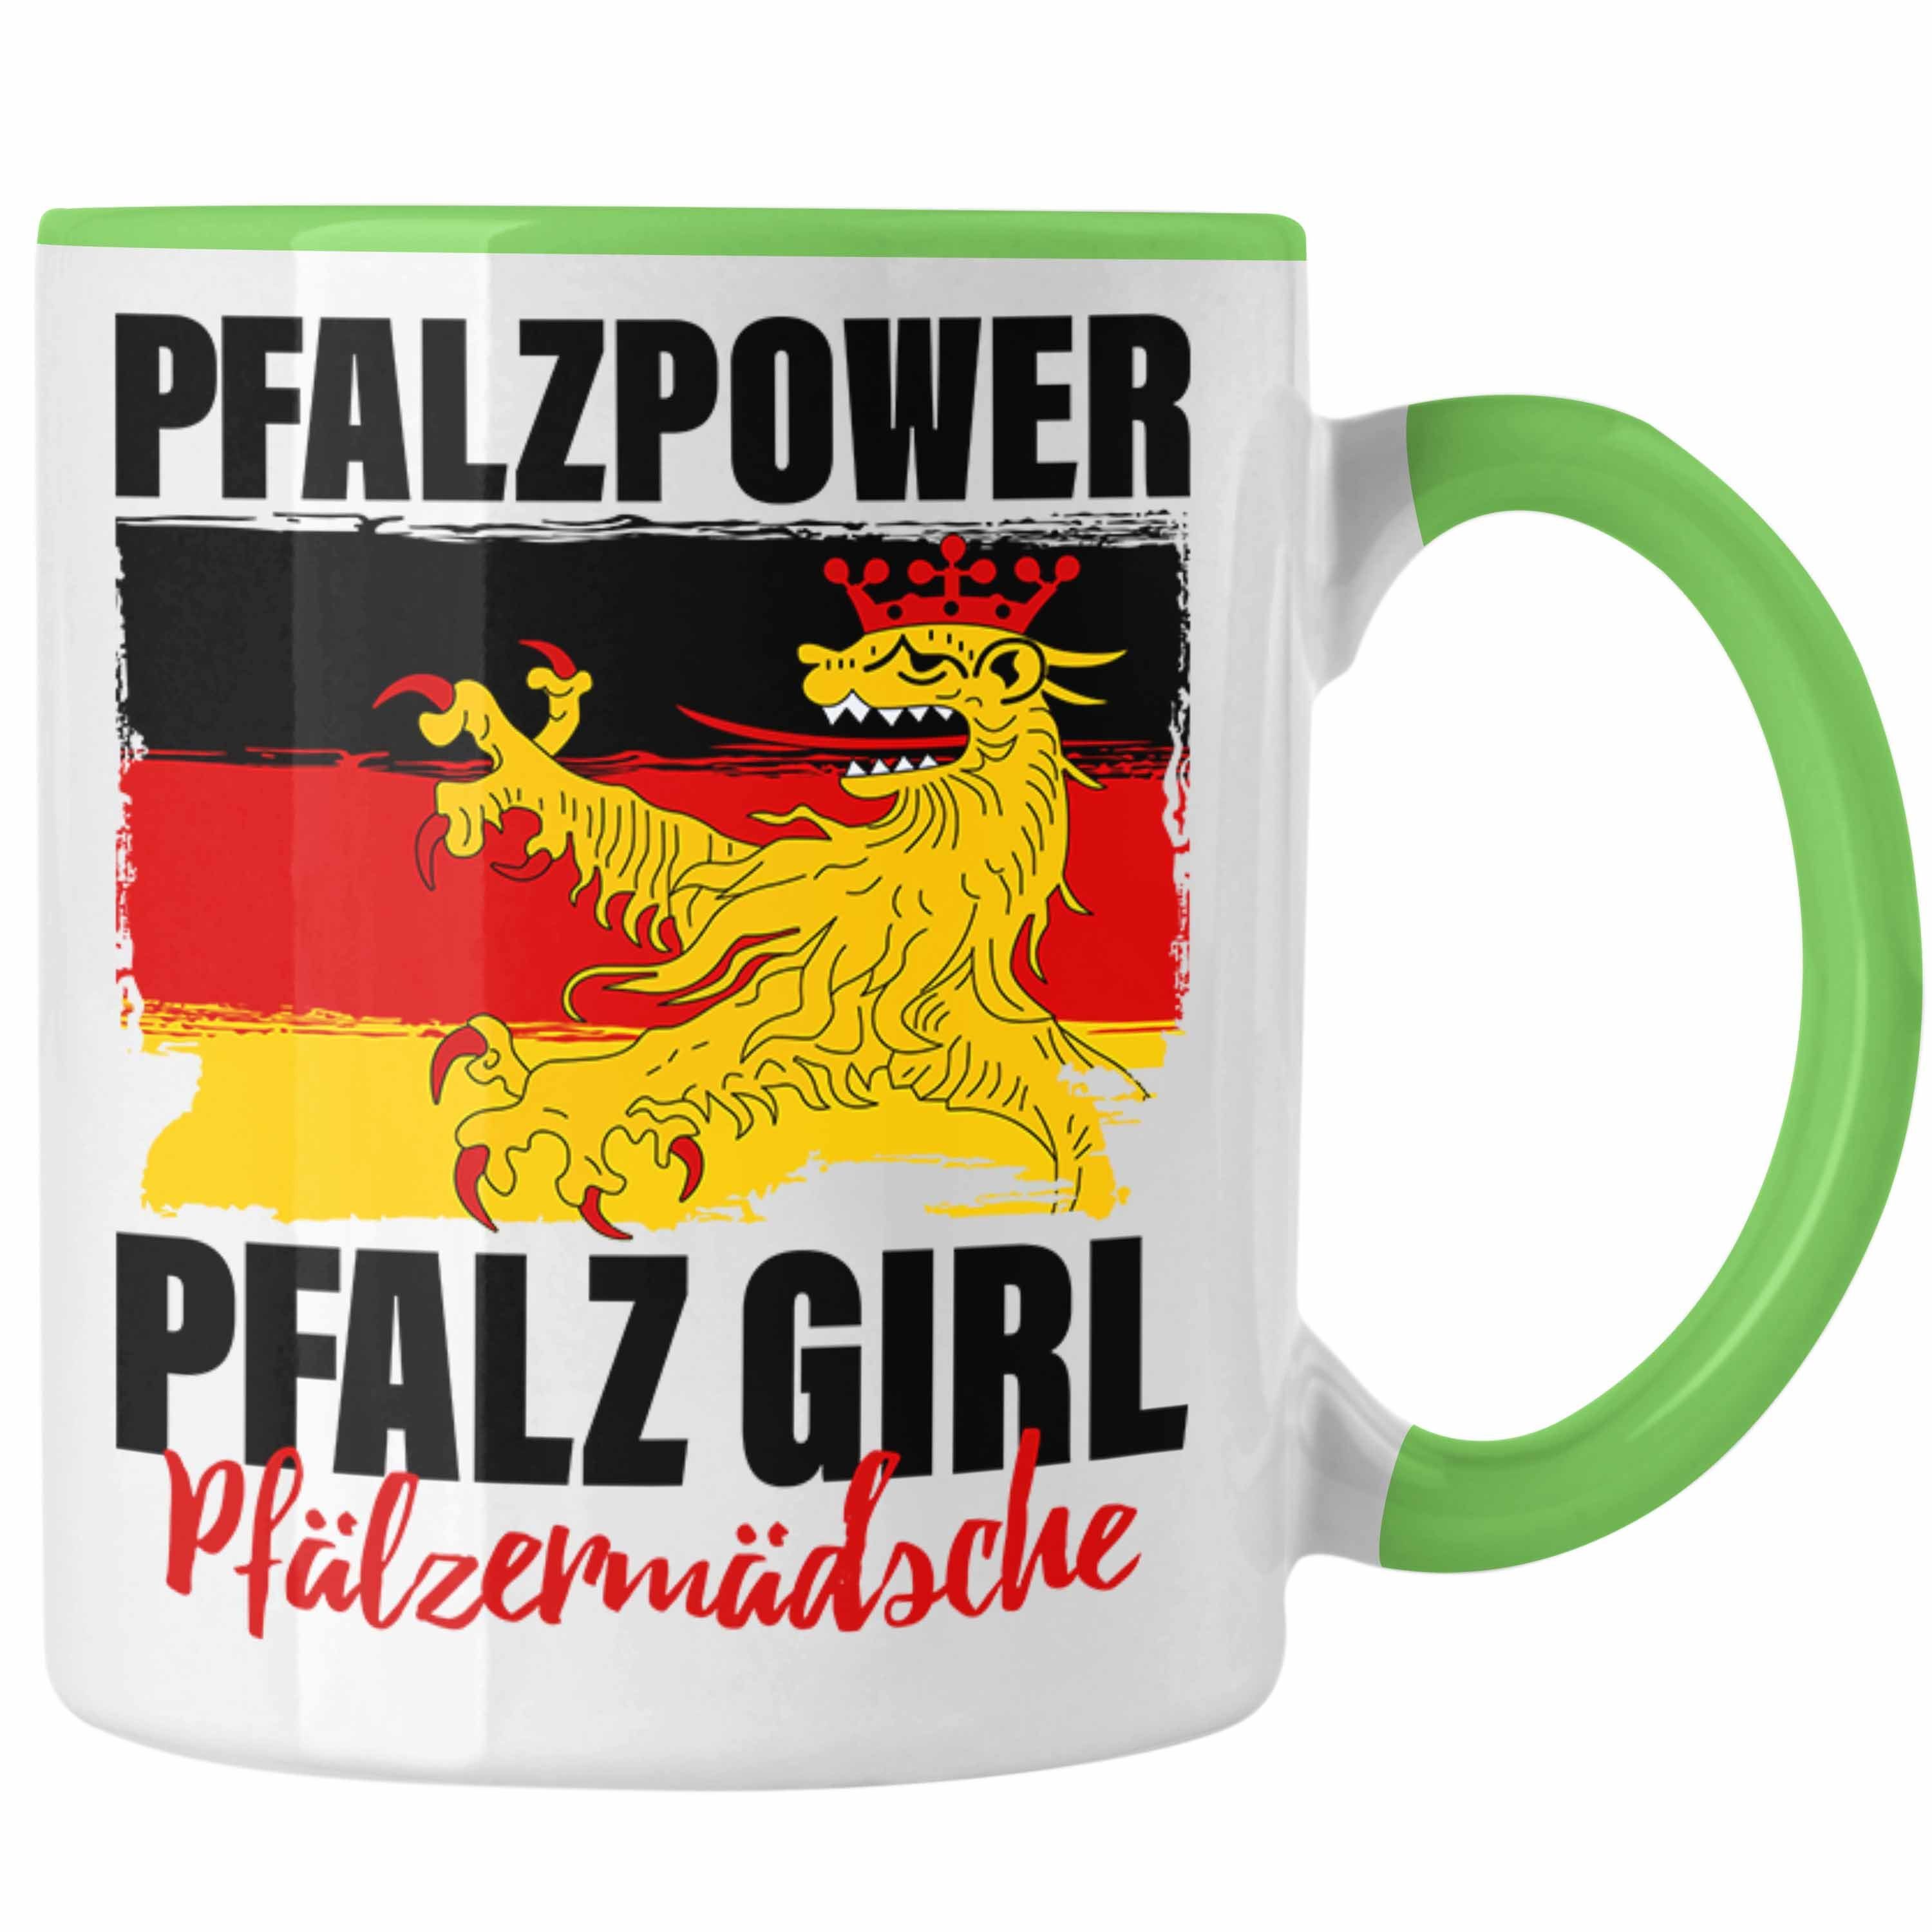 Trendation Tasse Pfalzpower Tasse Geschenk Frauen Pfalz Girl Pfalzmädsche Grün